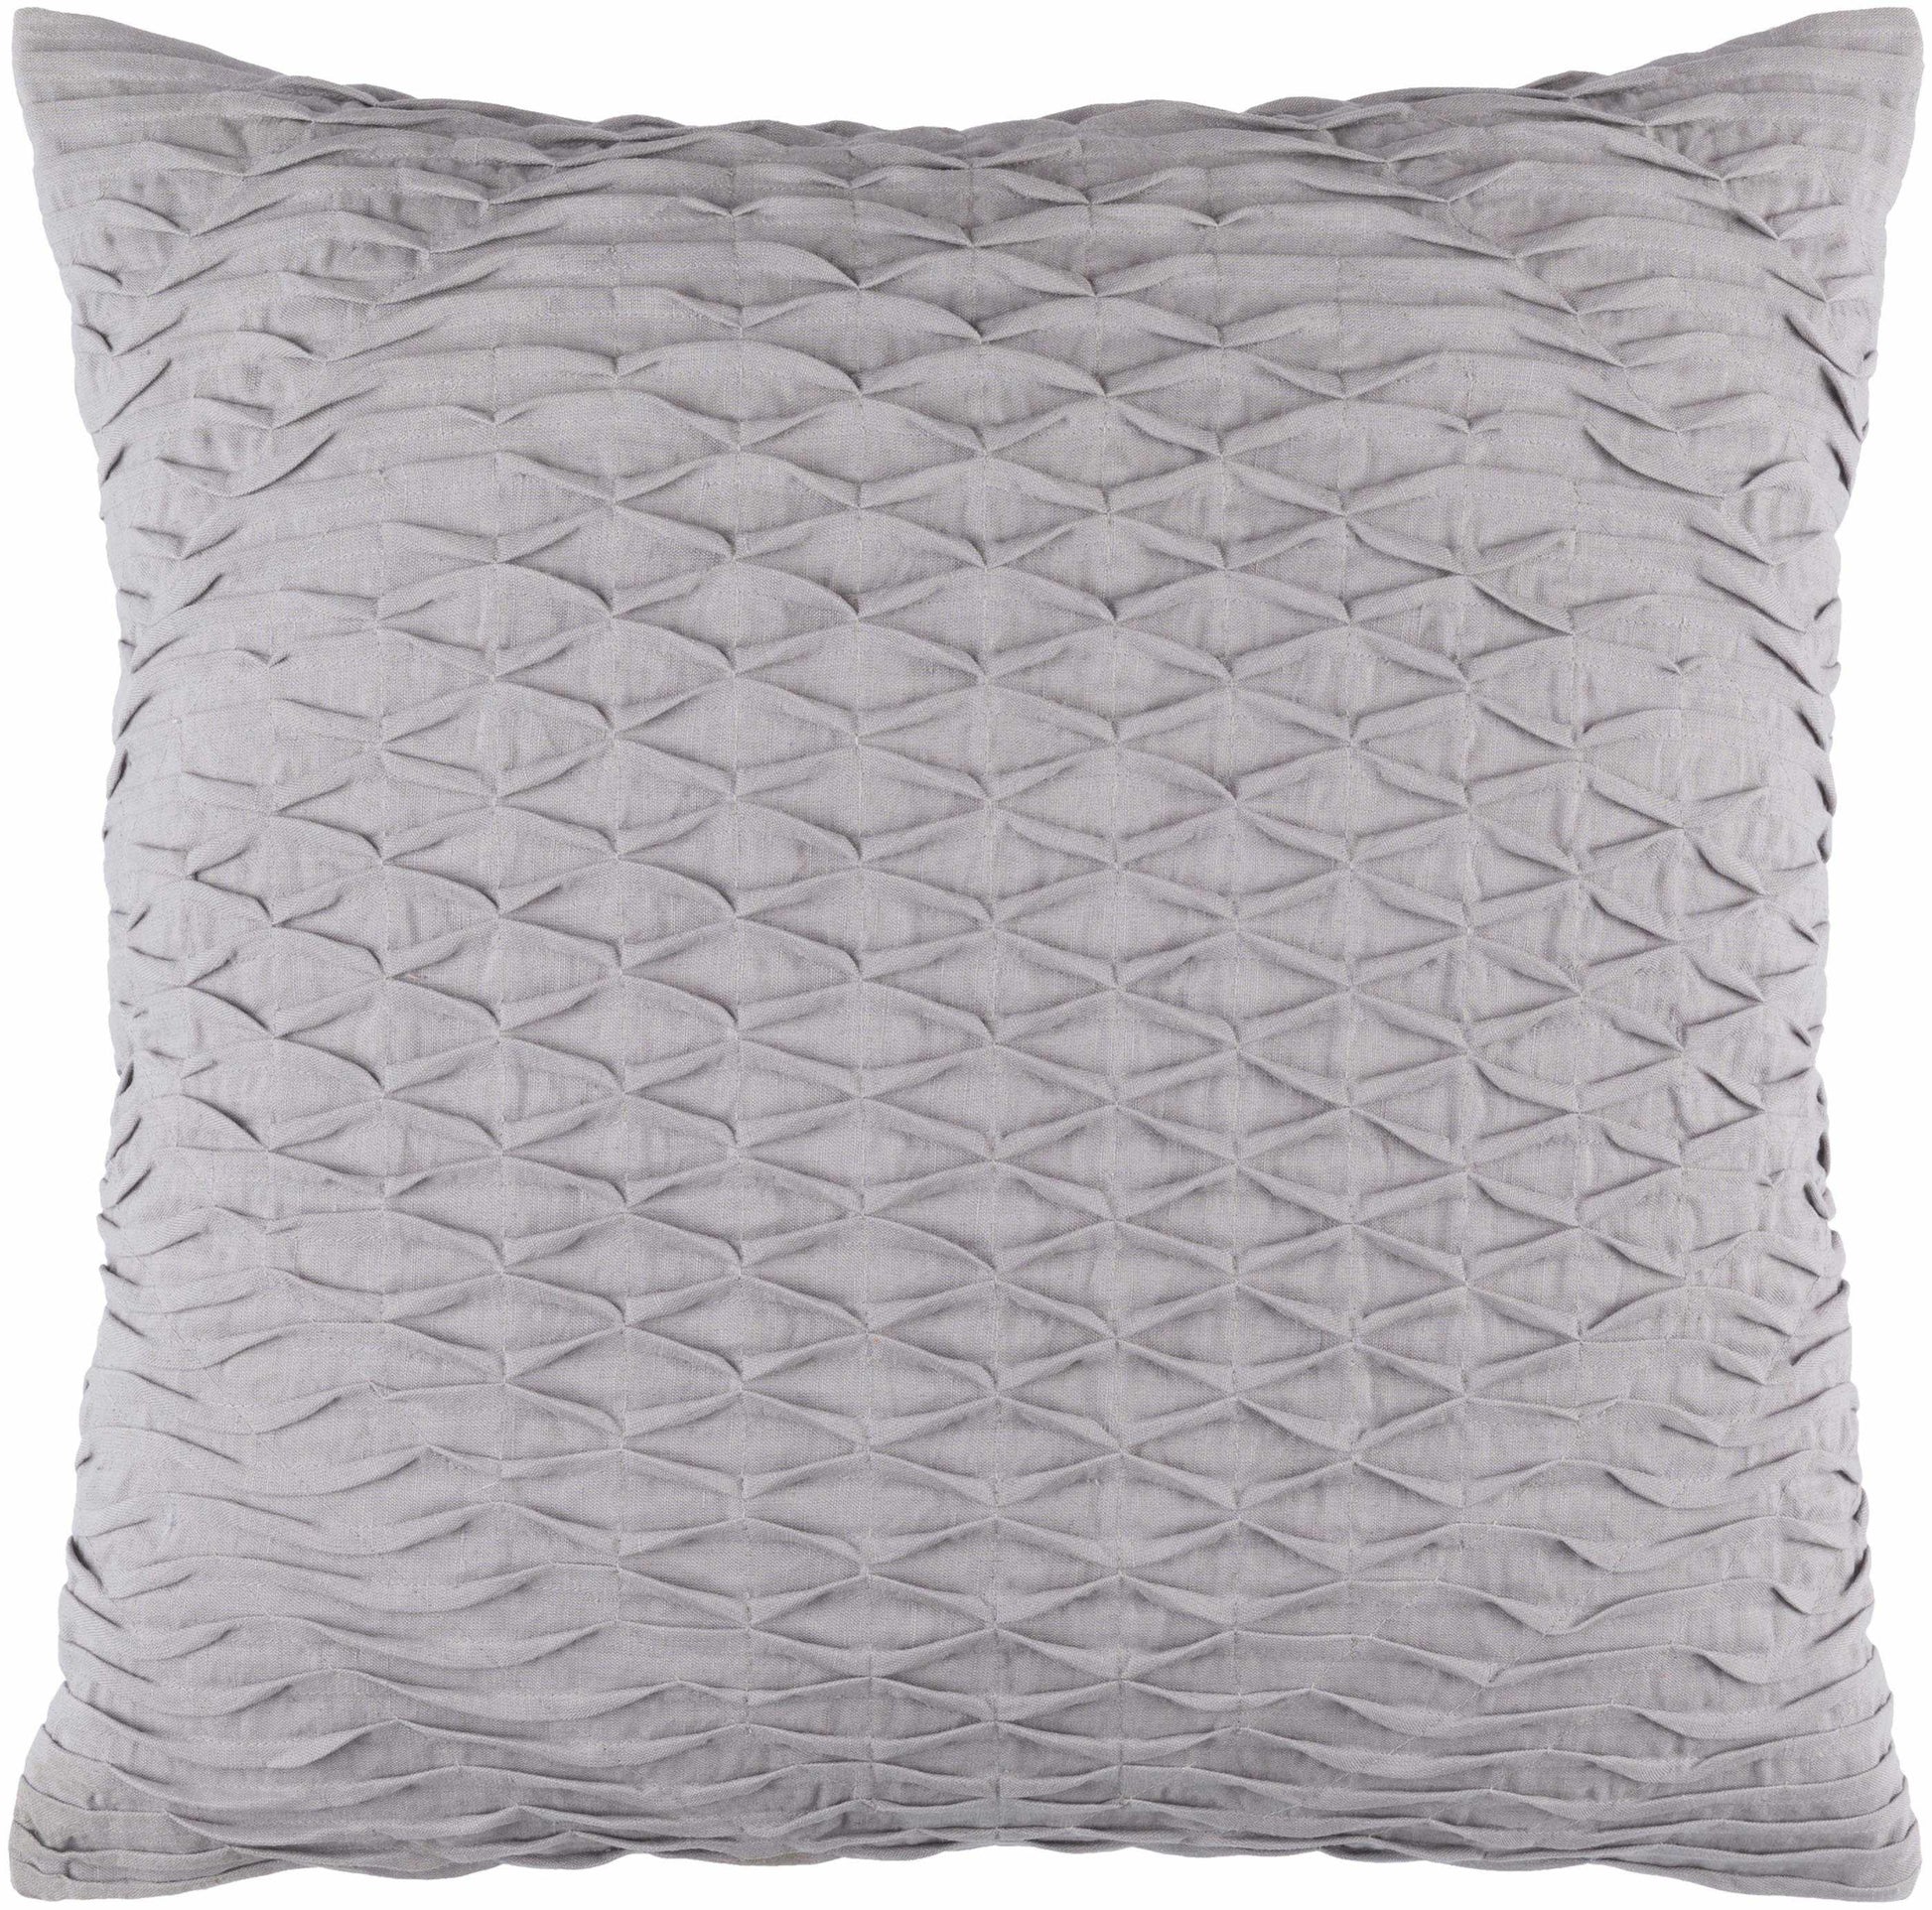 Avelgem Medium Gray Pillow Cover